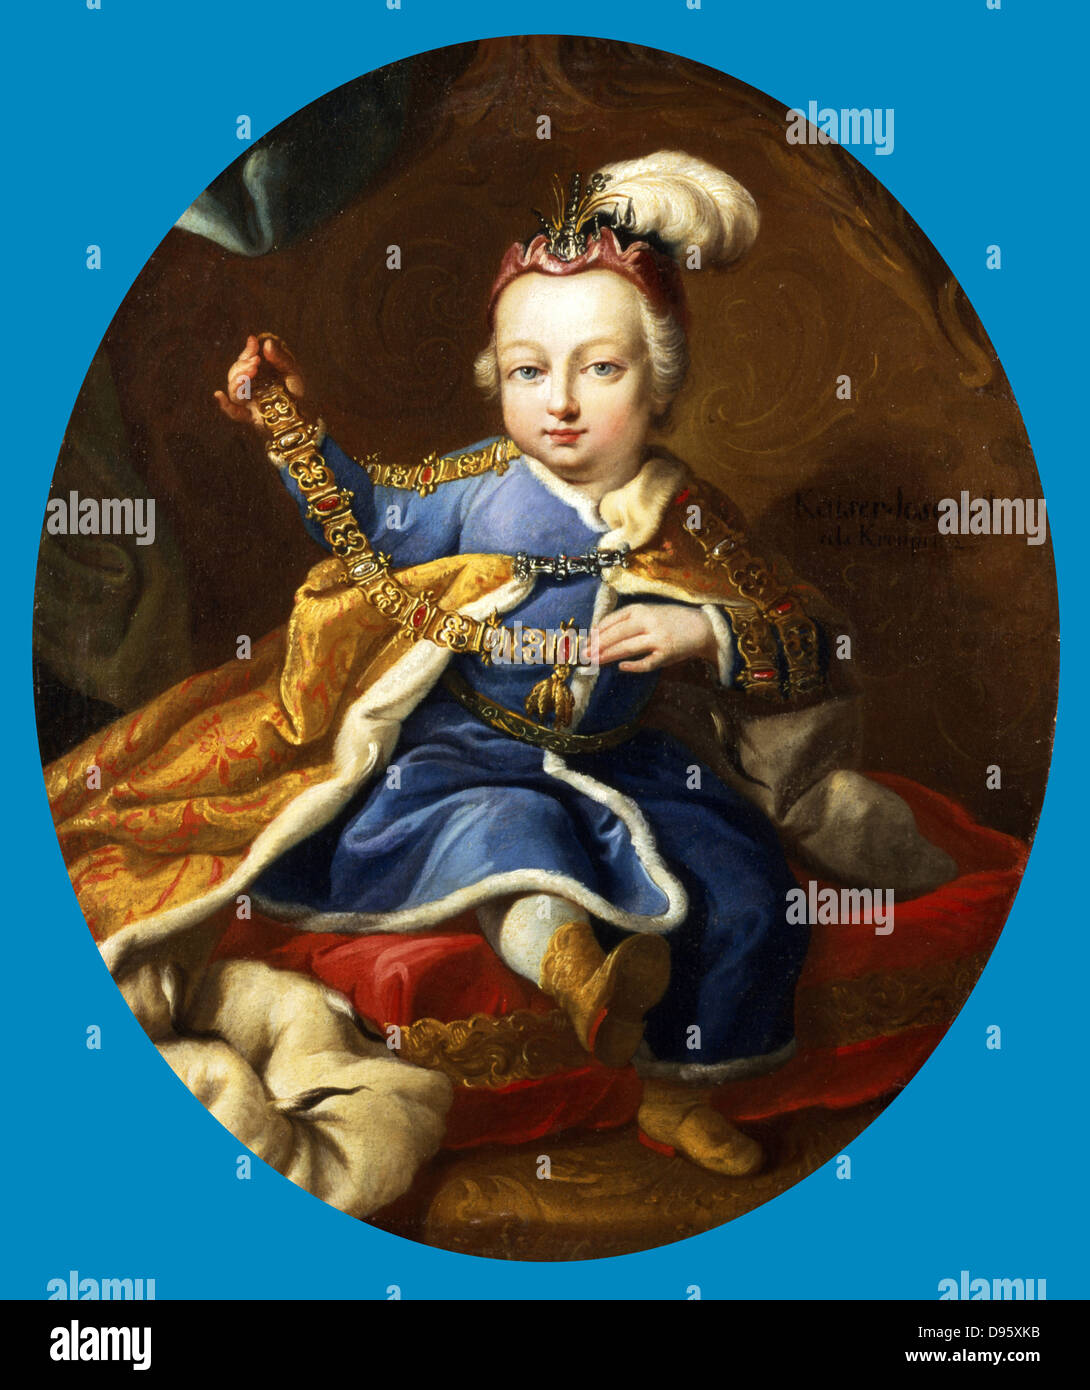 Le Prince Joseph (1741-1790), le futur empereur Joseph II d'Allemagne et l'Autriche. Fils François I et Marie Thérèse. Il est démontré maintenant l'ordre de la Toison d'or. Portrait par cercle de Martin Mytens II (1695-1770). Banque D'Images